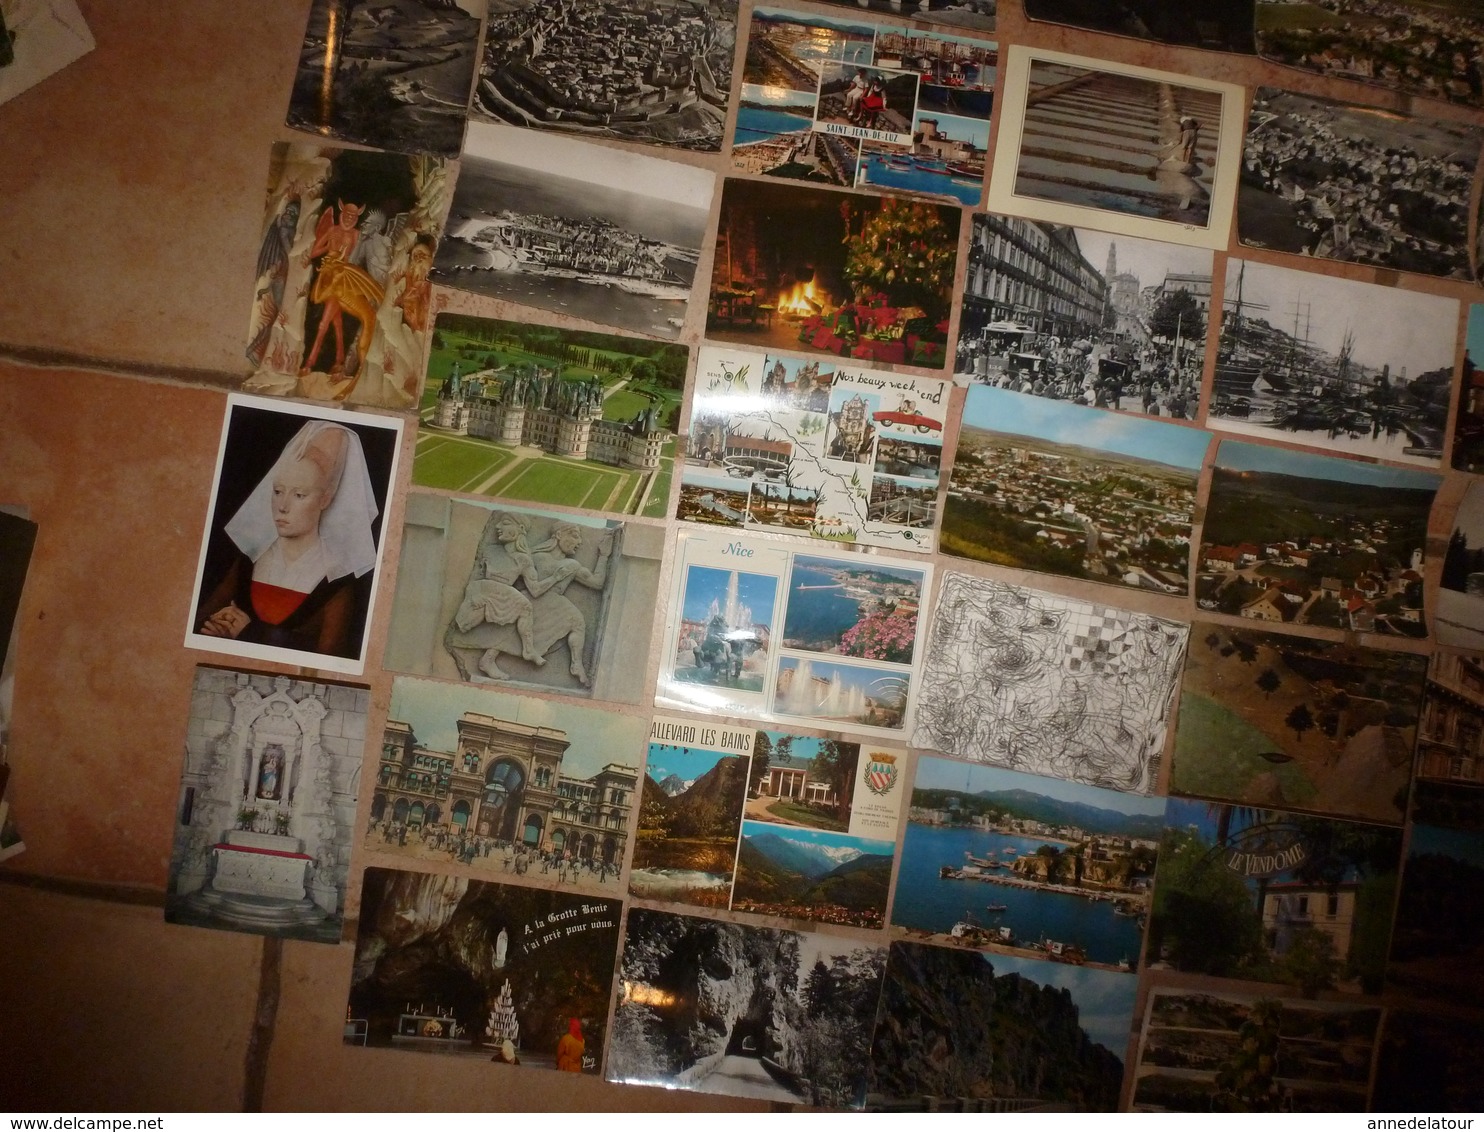 Lot vrac de 110 CARTES POSTALES de France etc(Cartes postales moderne (15cm x 10cm) comprenant :scènes diverses, etc